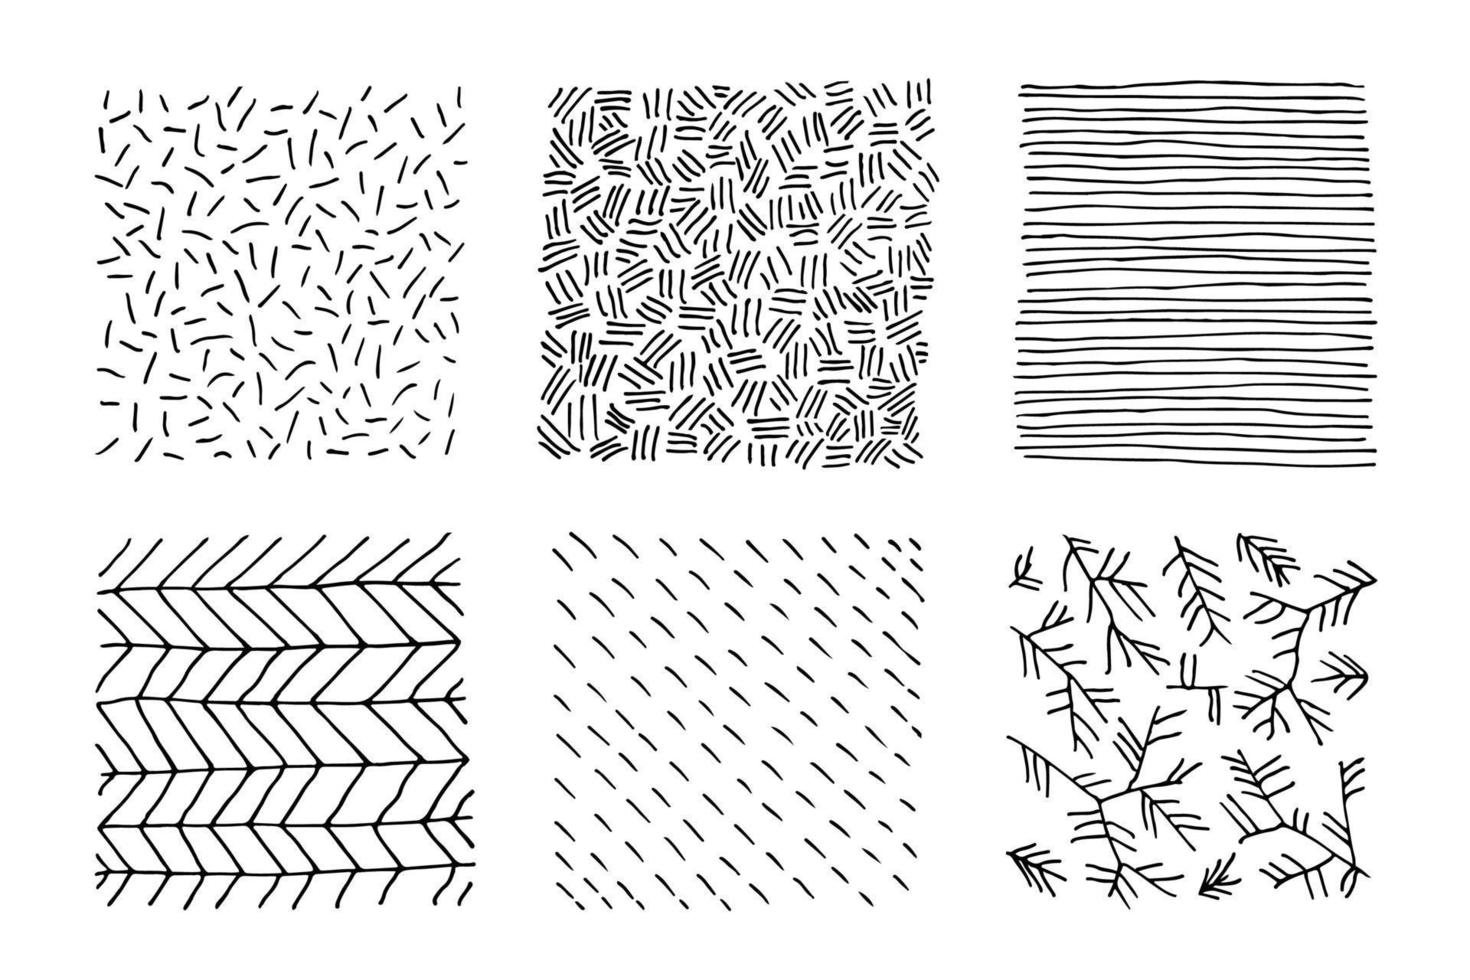 conjunto de texturas en blanco y negro dibujadas a mano con puntos, círculos, semicírculos, líneas y trazos discontinuos. formas dibujadas a mano de garabatos. manchas, gotas, curvas, líneas. vector